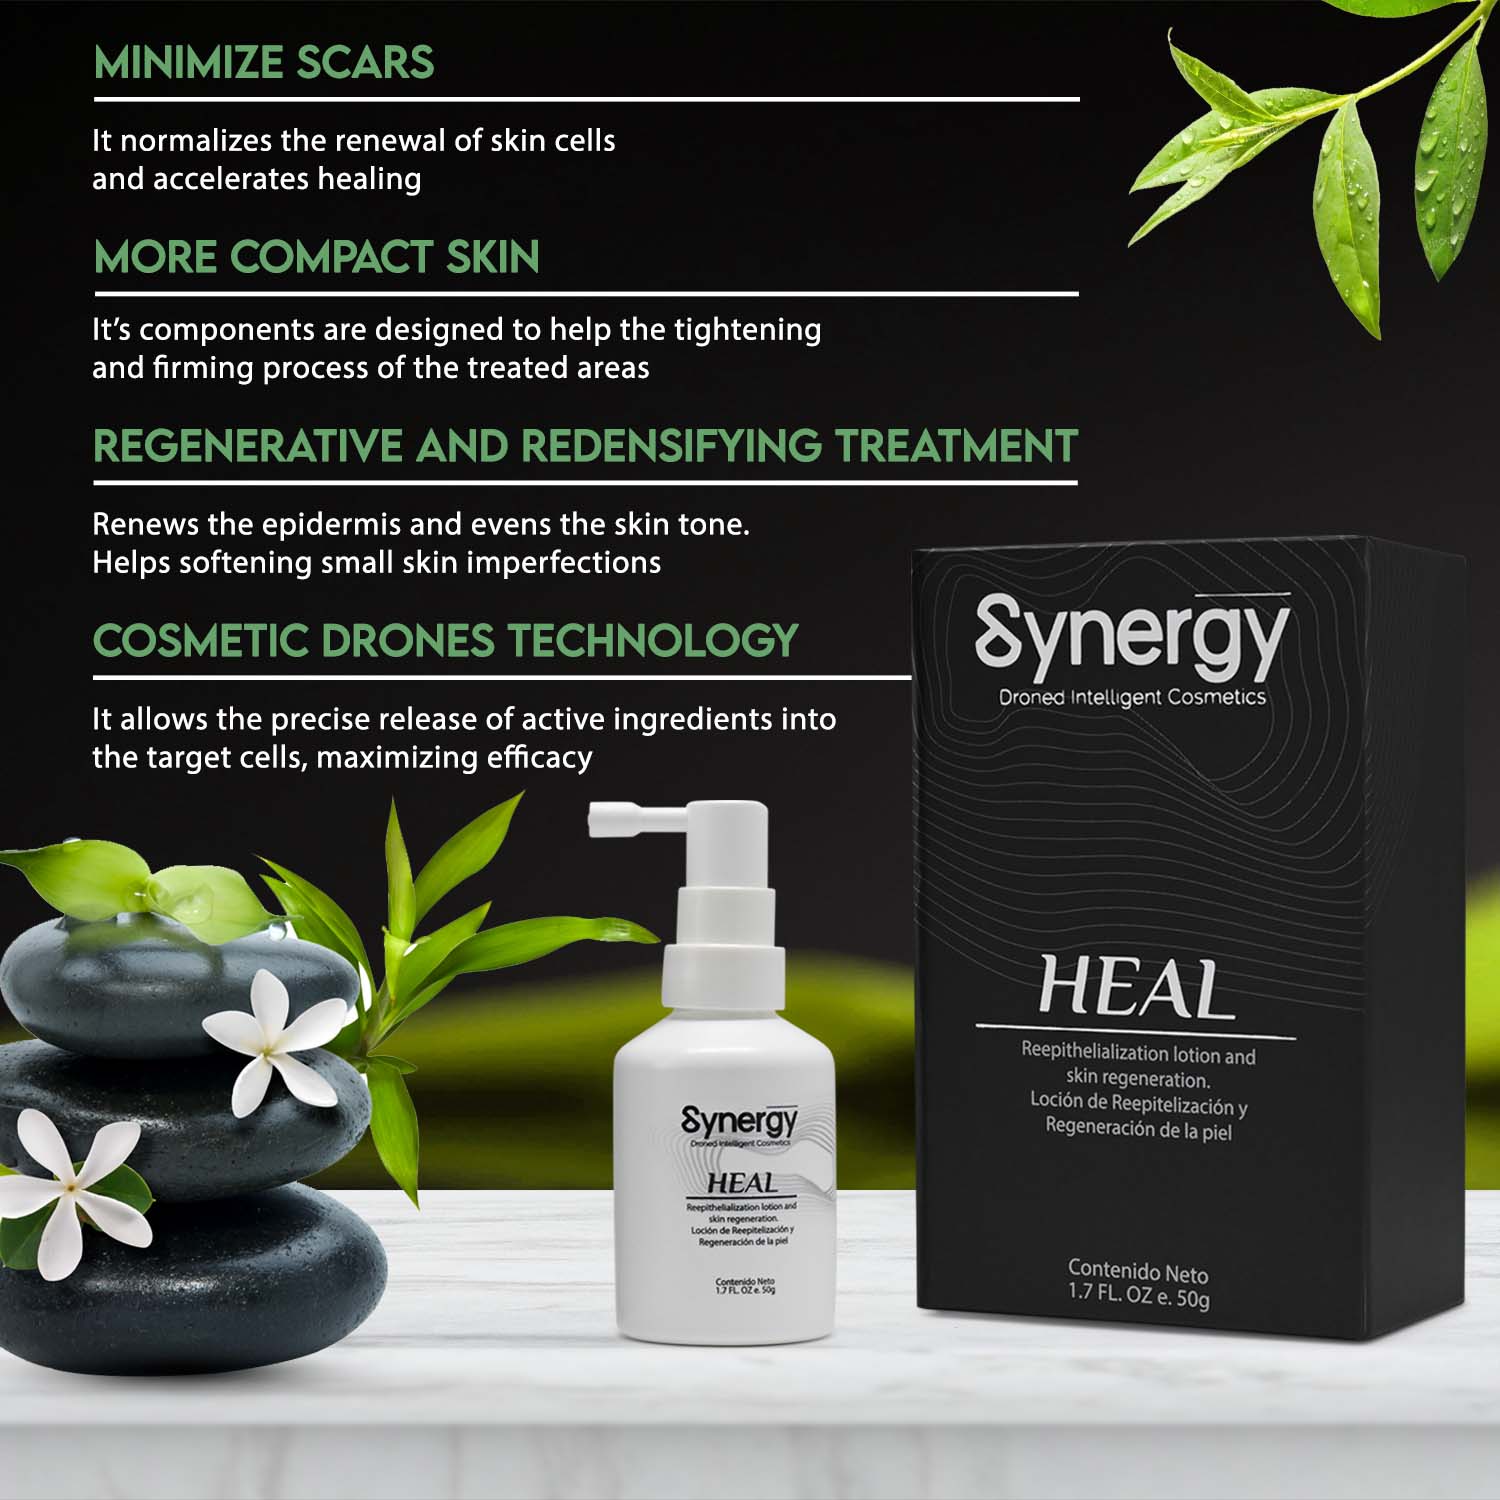 Synergy Heal para el cuidado de la piel, cicatrices y estrías -1.7FL Oz